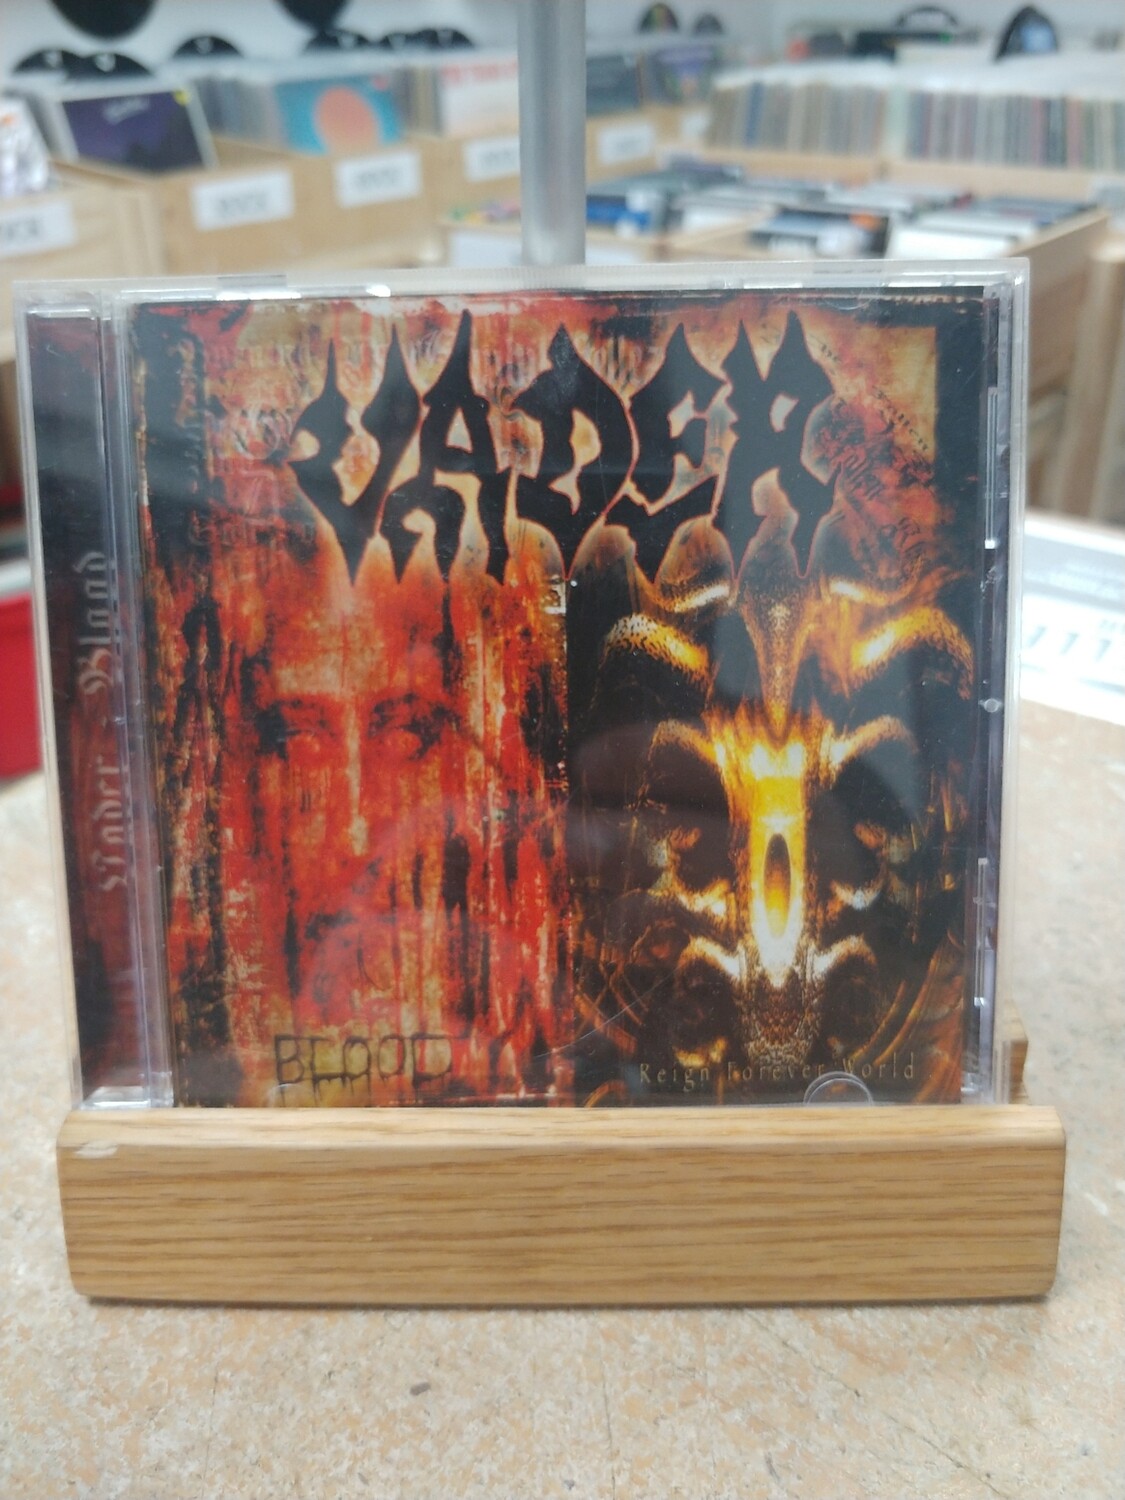 Vader - Blood reign forever (CD)